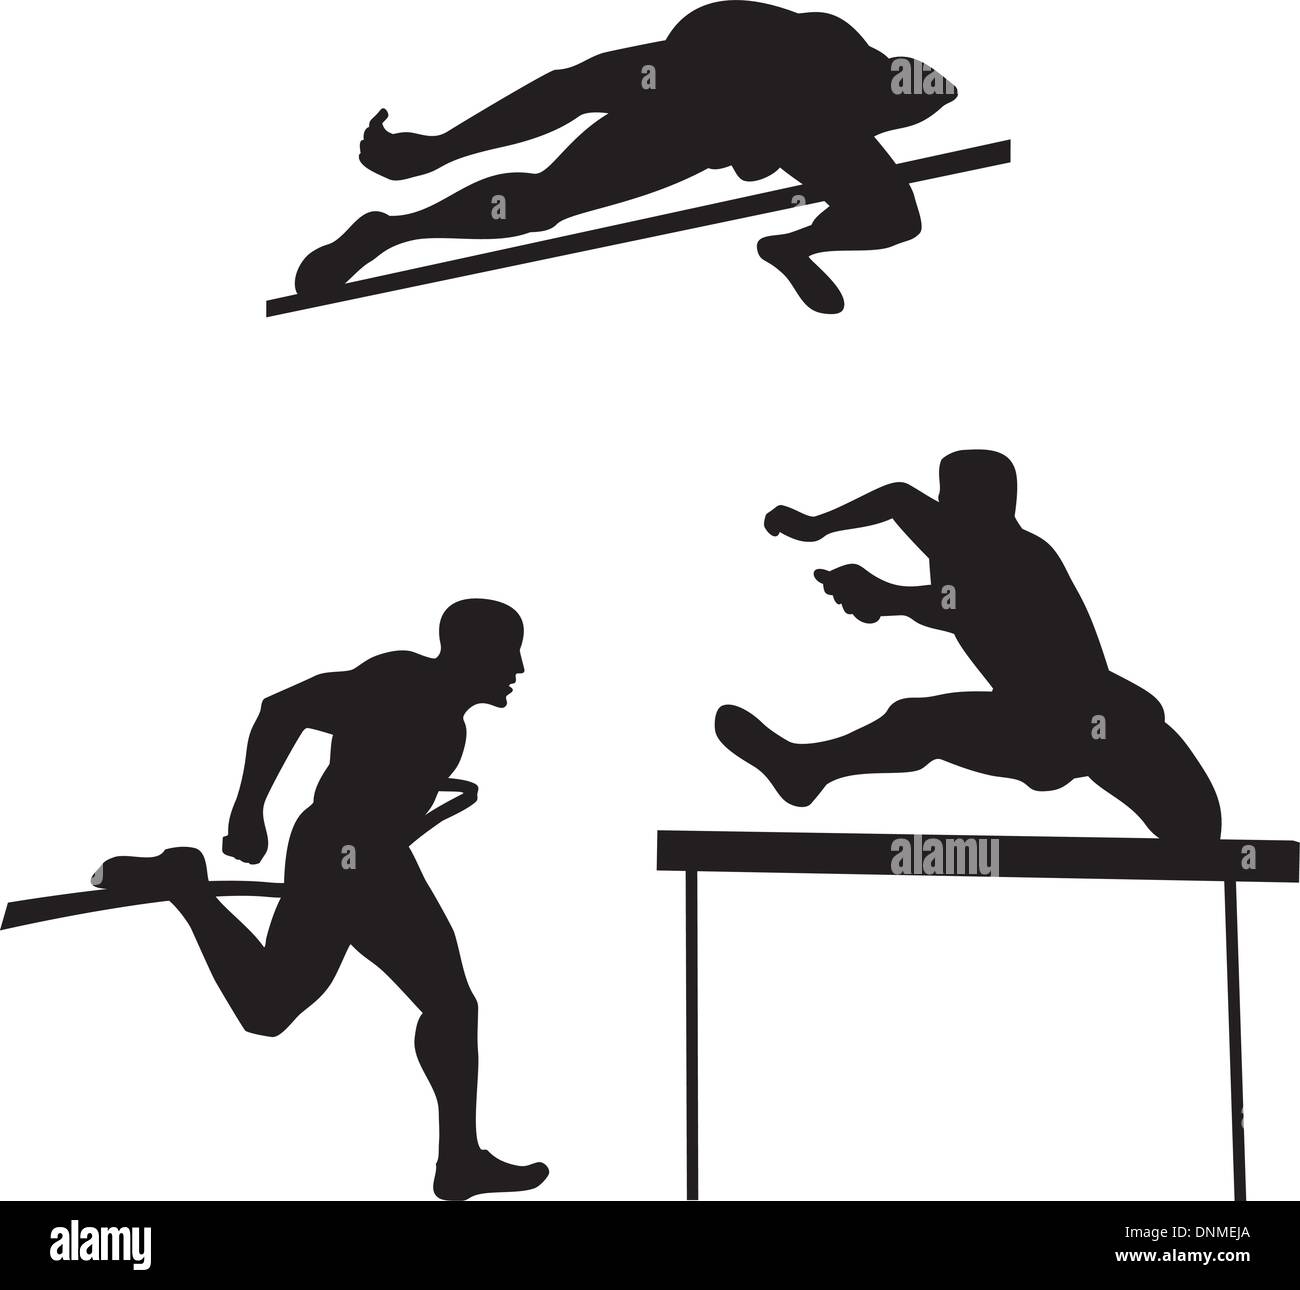 Illustration von Track &amp; Field Runner Silhouette am isolierten weißen Hintergrund im retro-Stil gemacht. Stock Vektor